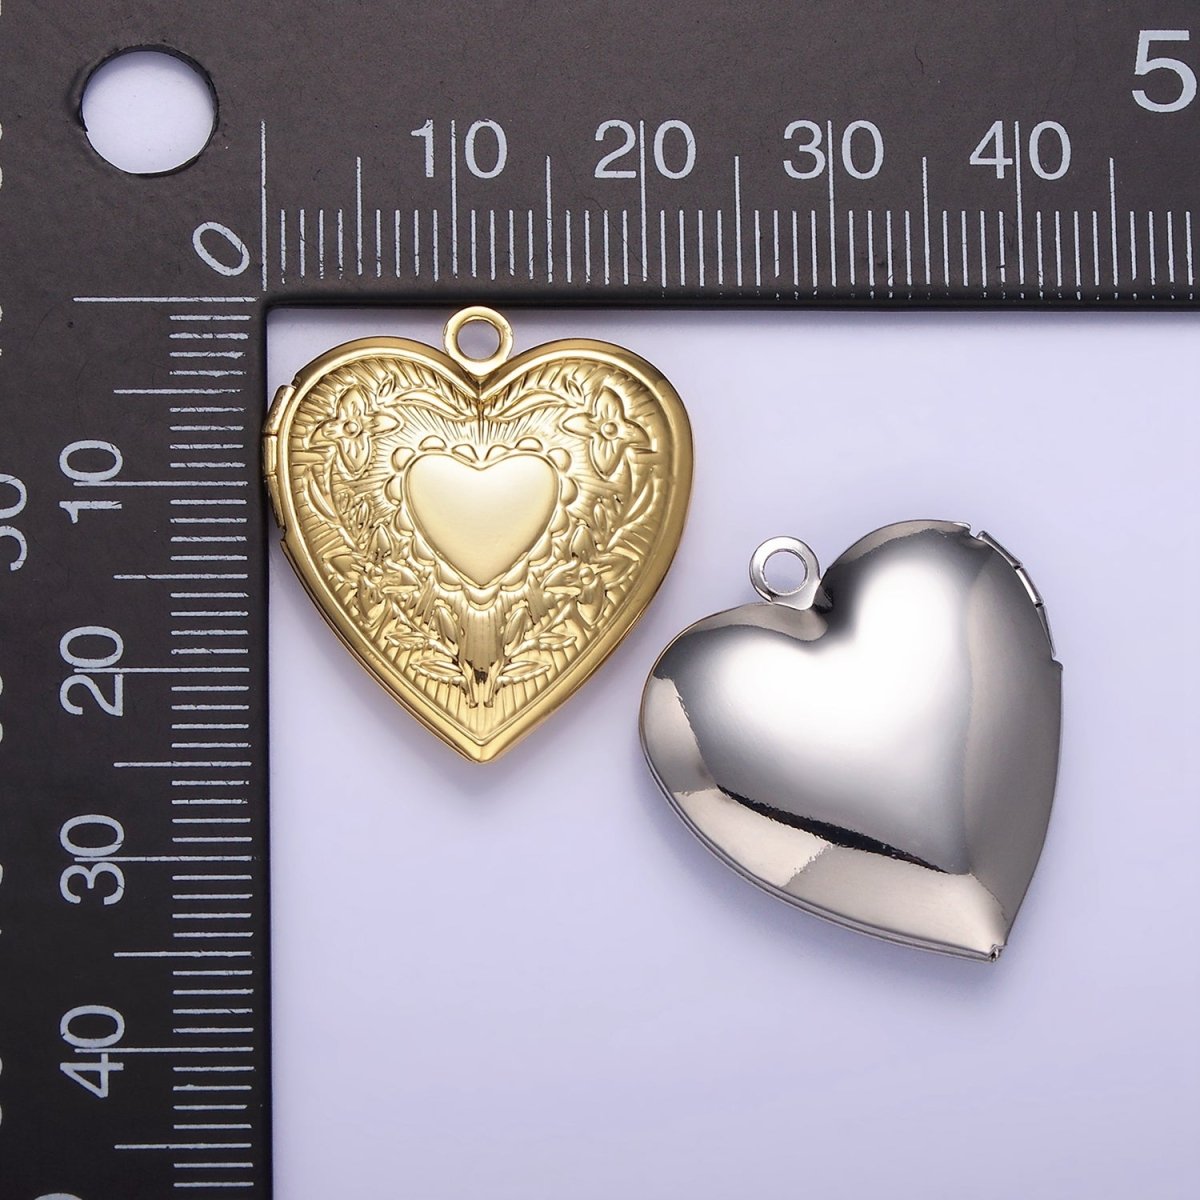 14K Gold Filled Engraved Flower Leaf Sunburst Heart Locket Pendant in Gold & Silver | H049 - DLUXCA